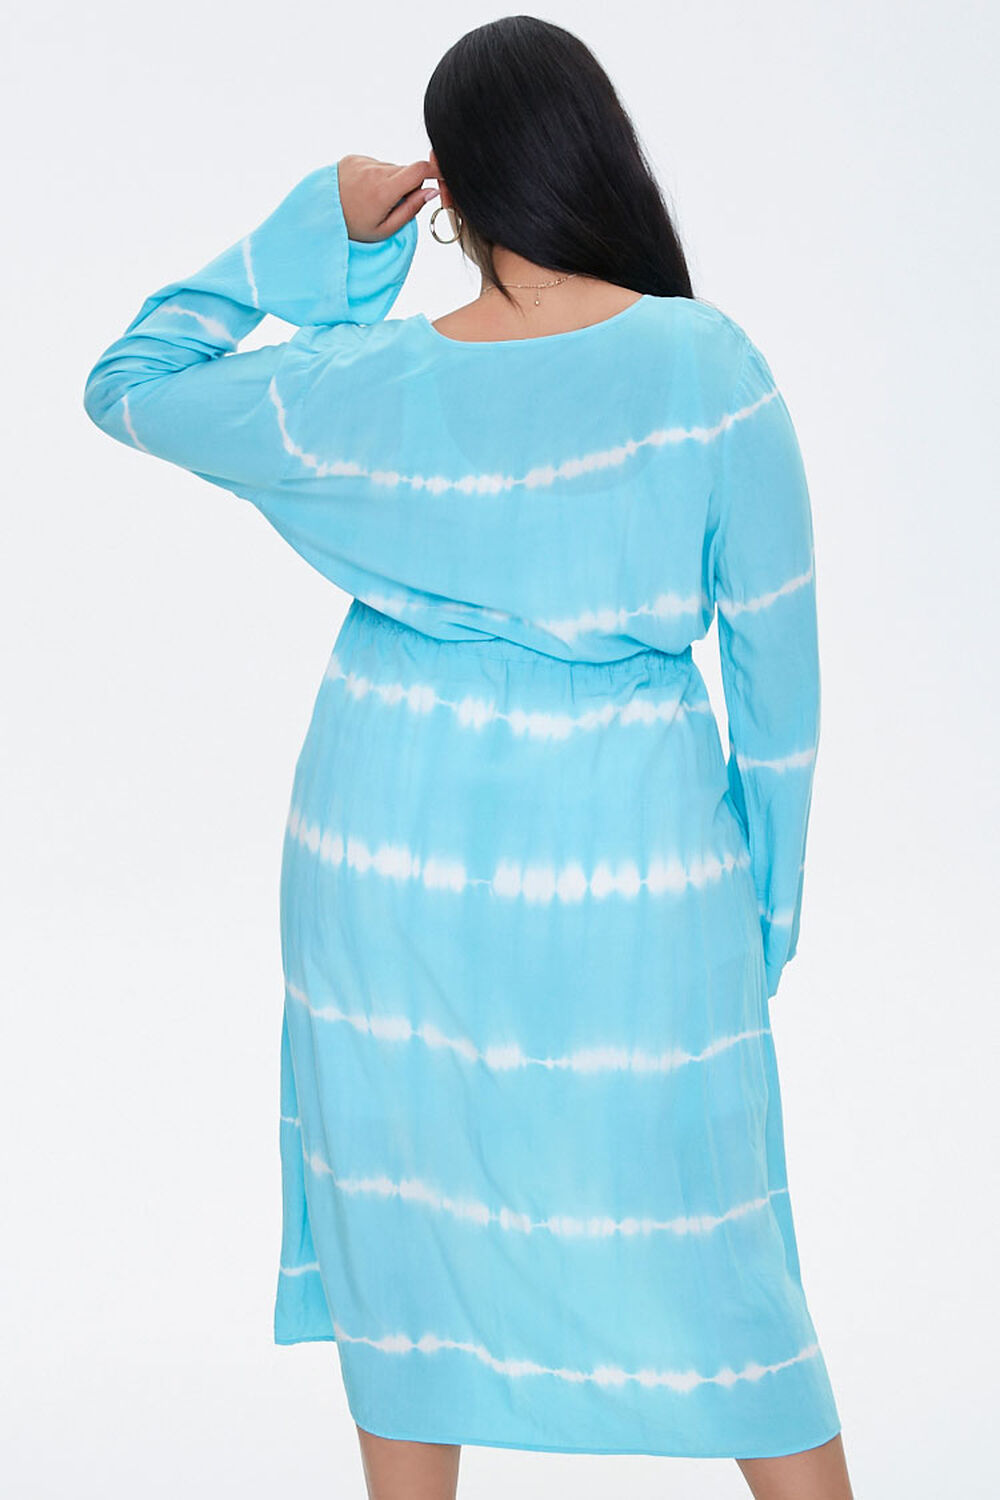 AQUA/WHITE Plus Size Tie-Dye Kimono, image 3